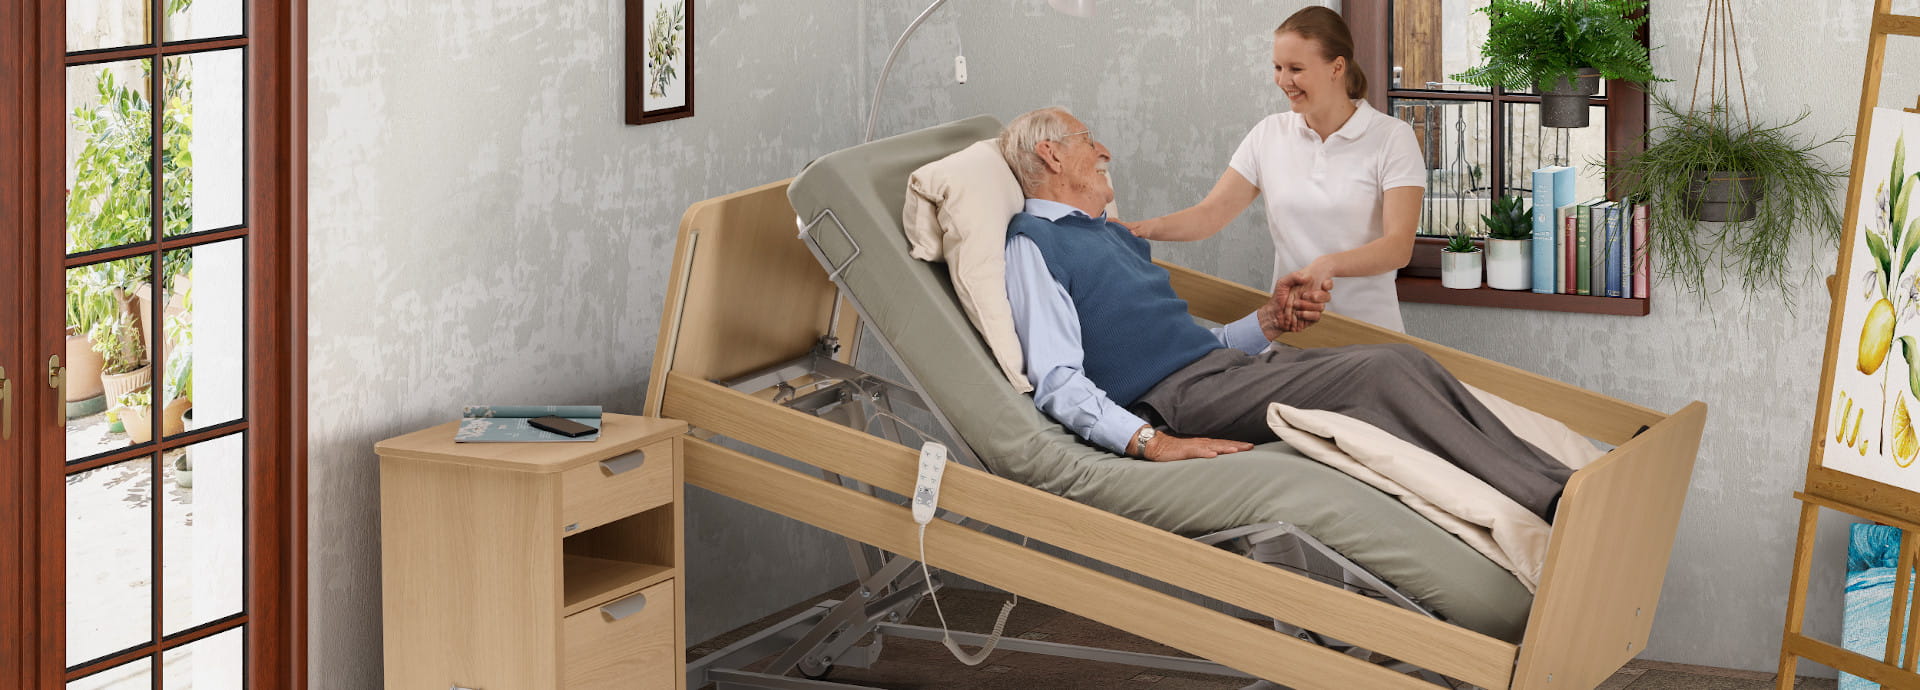 movita sc - Le lit de soins bas comme base pour tous les besoins